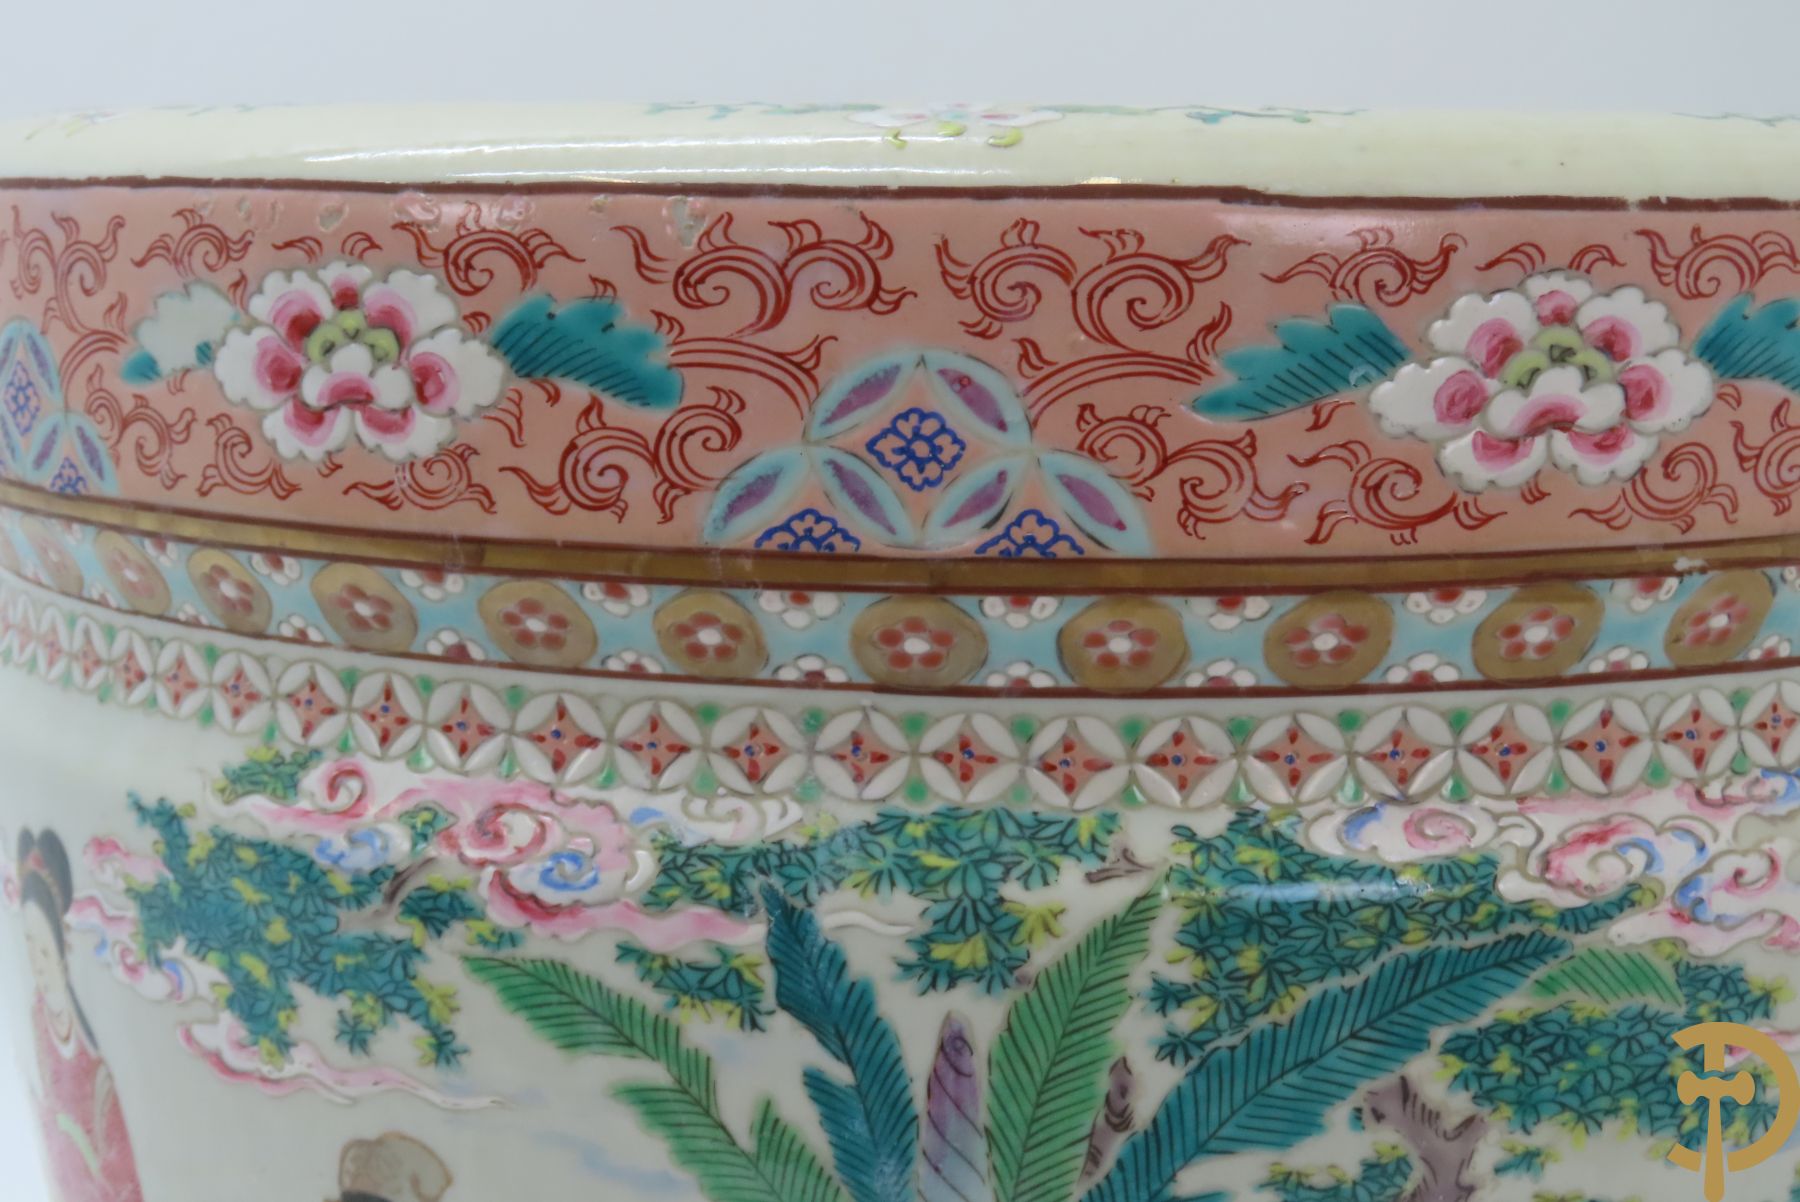 Chinese porseleinen cachepot met decor van tafel met wijsgeer en dames, onderaan gemerkt